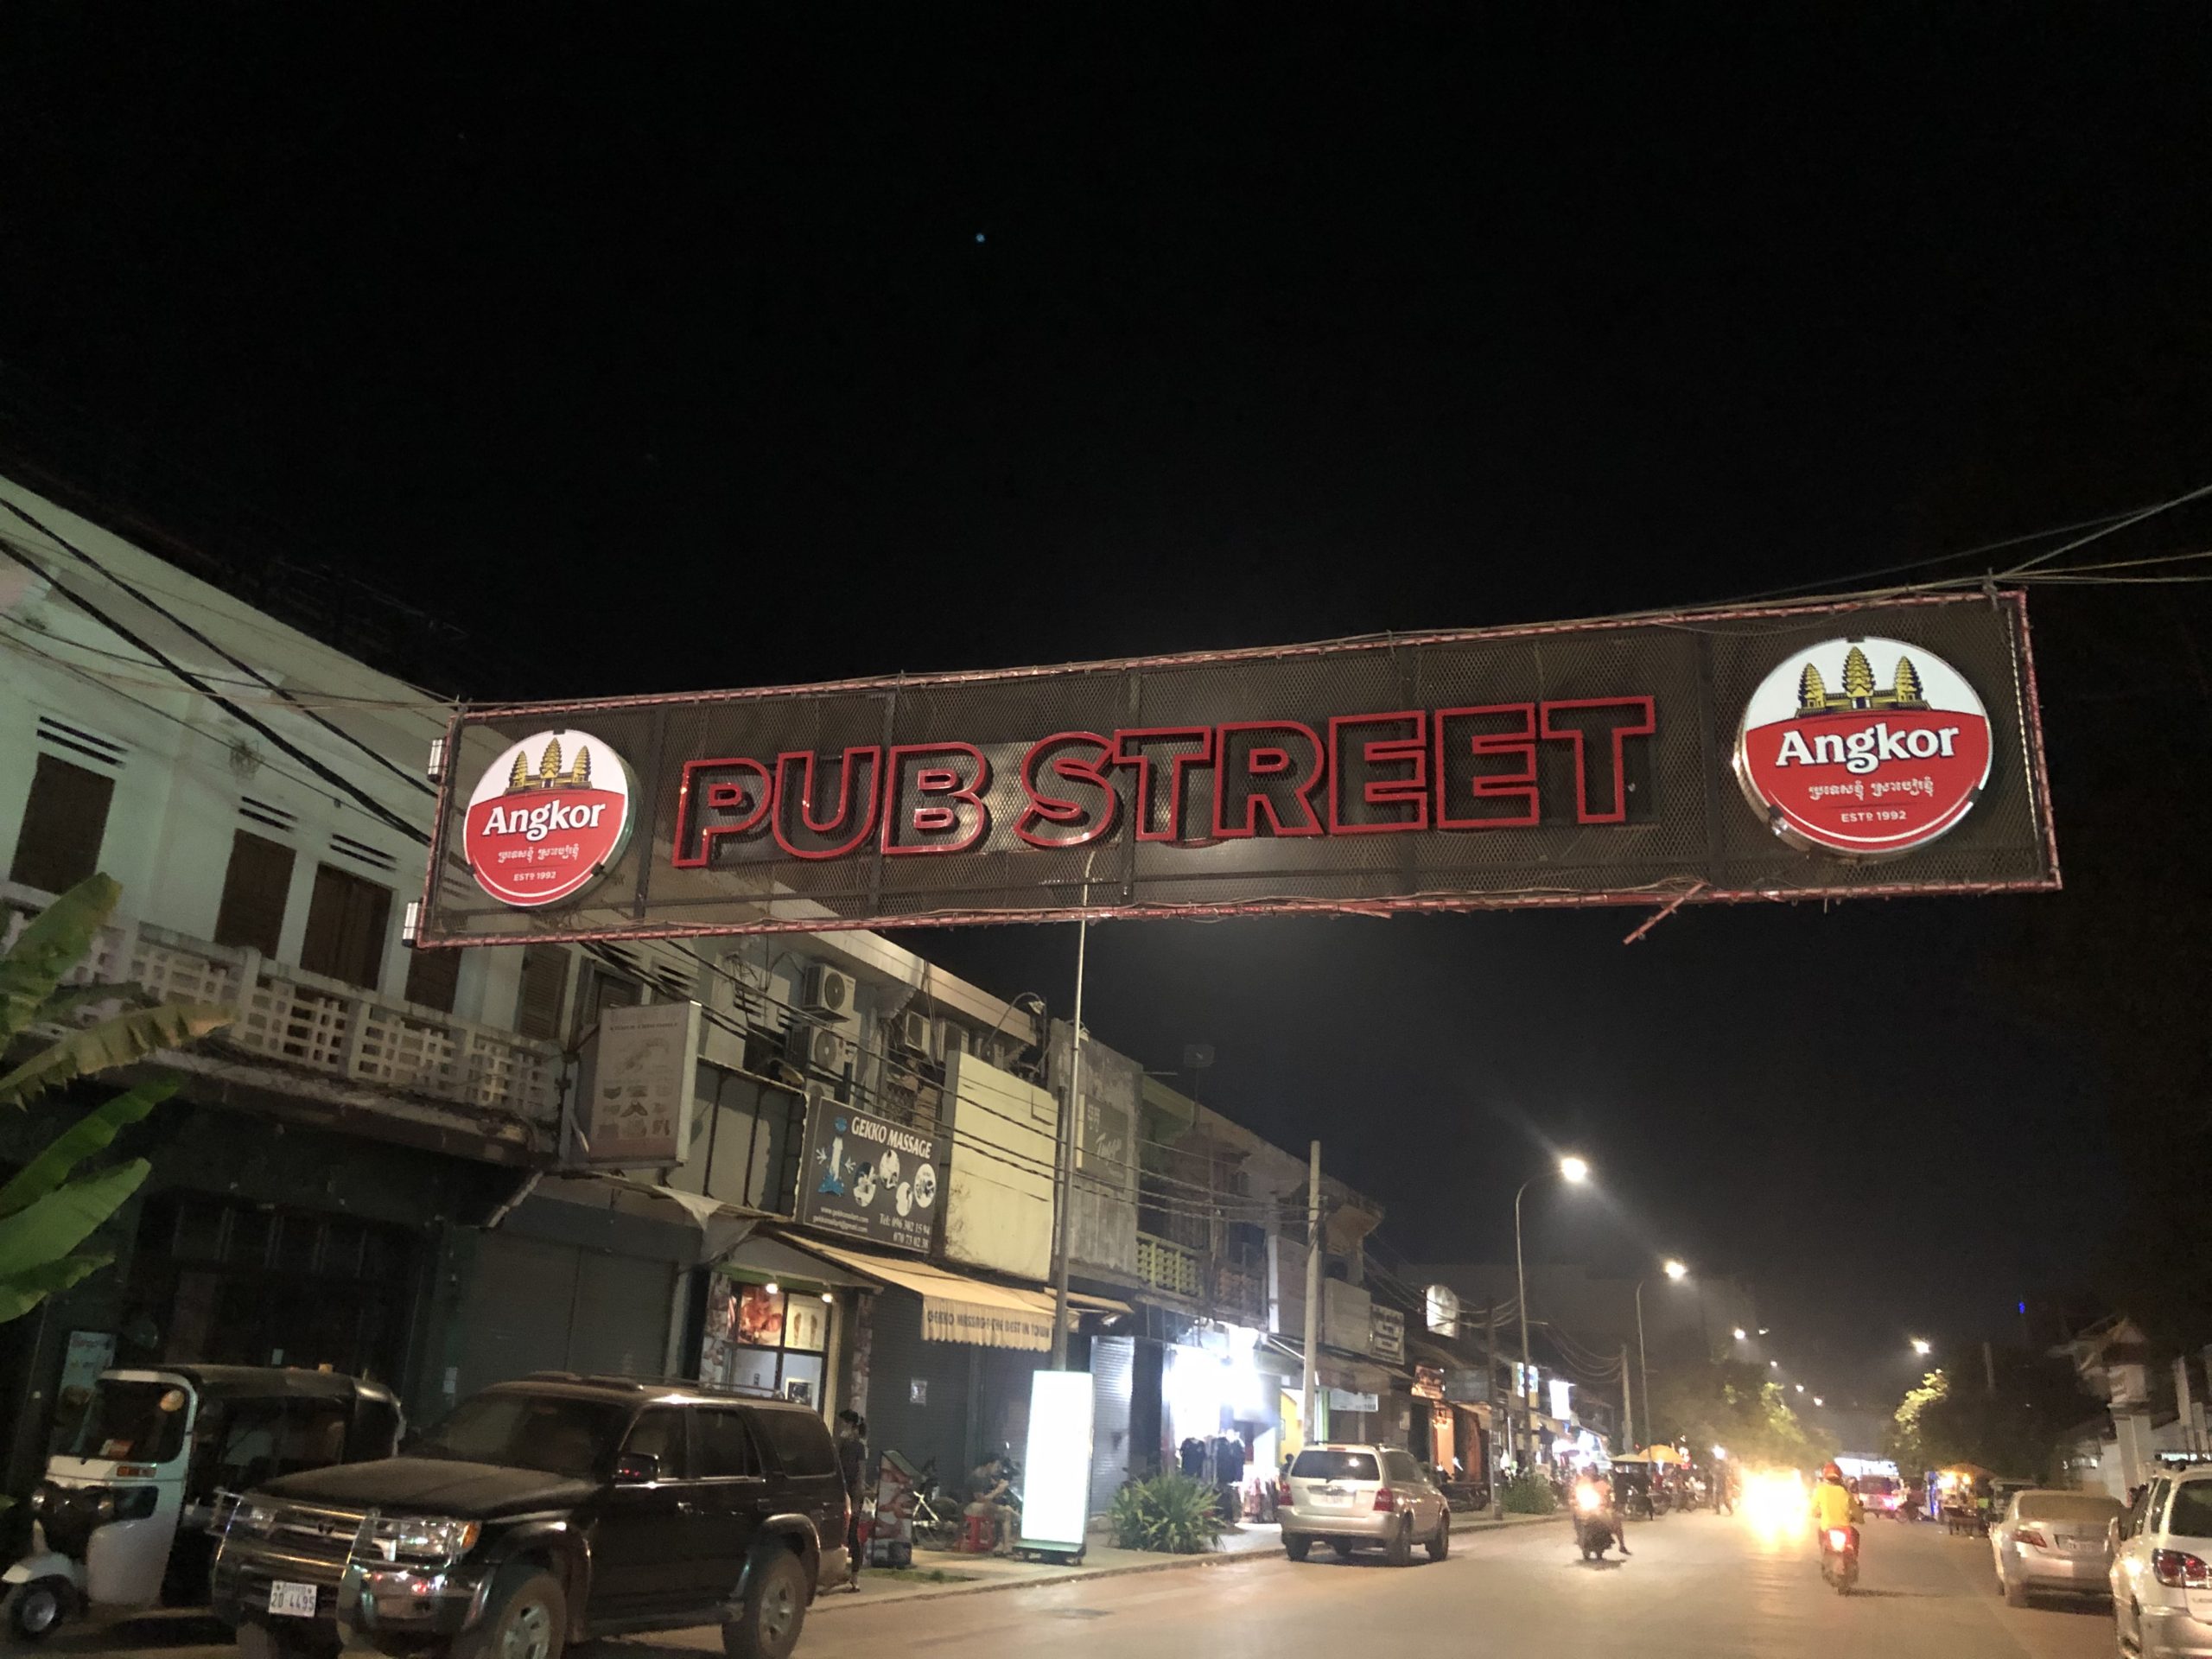 シェムリアップ 衝撃 現在のパブストリート カンボジア旅行 スケッチトラベル クロマーツアーズ